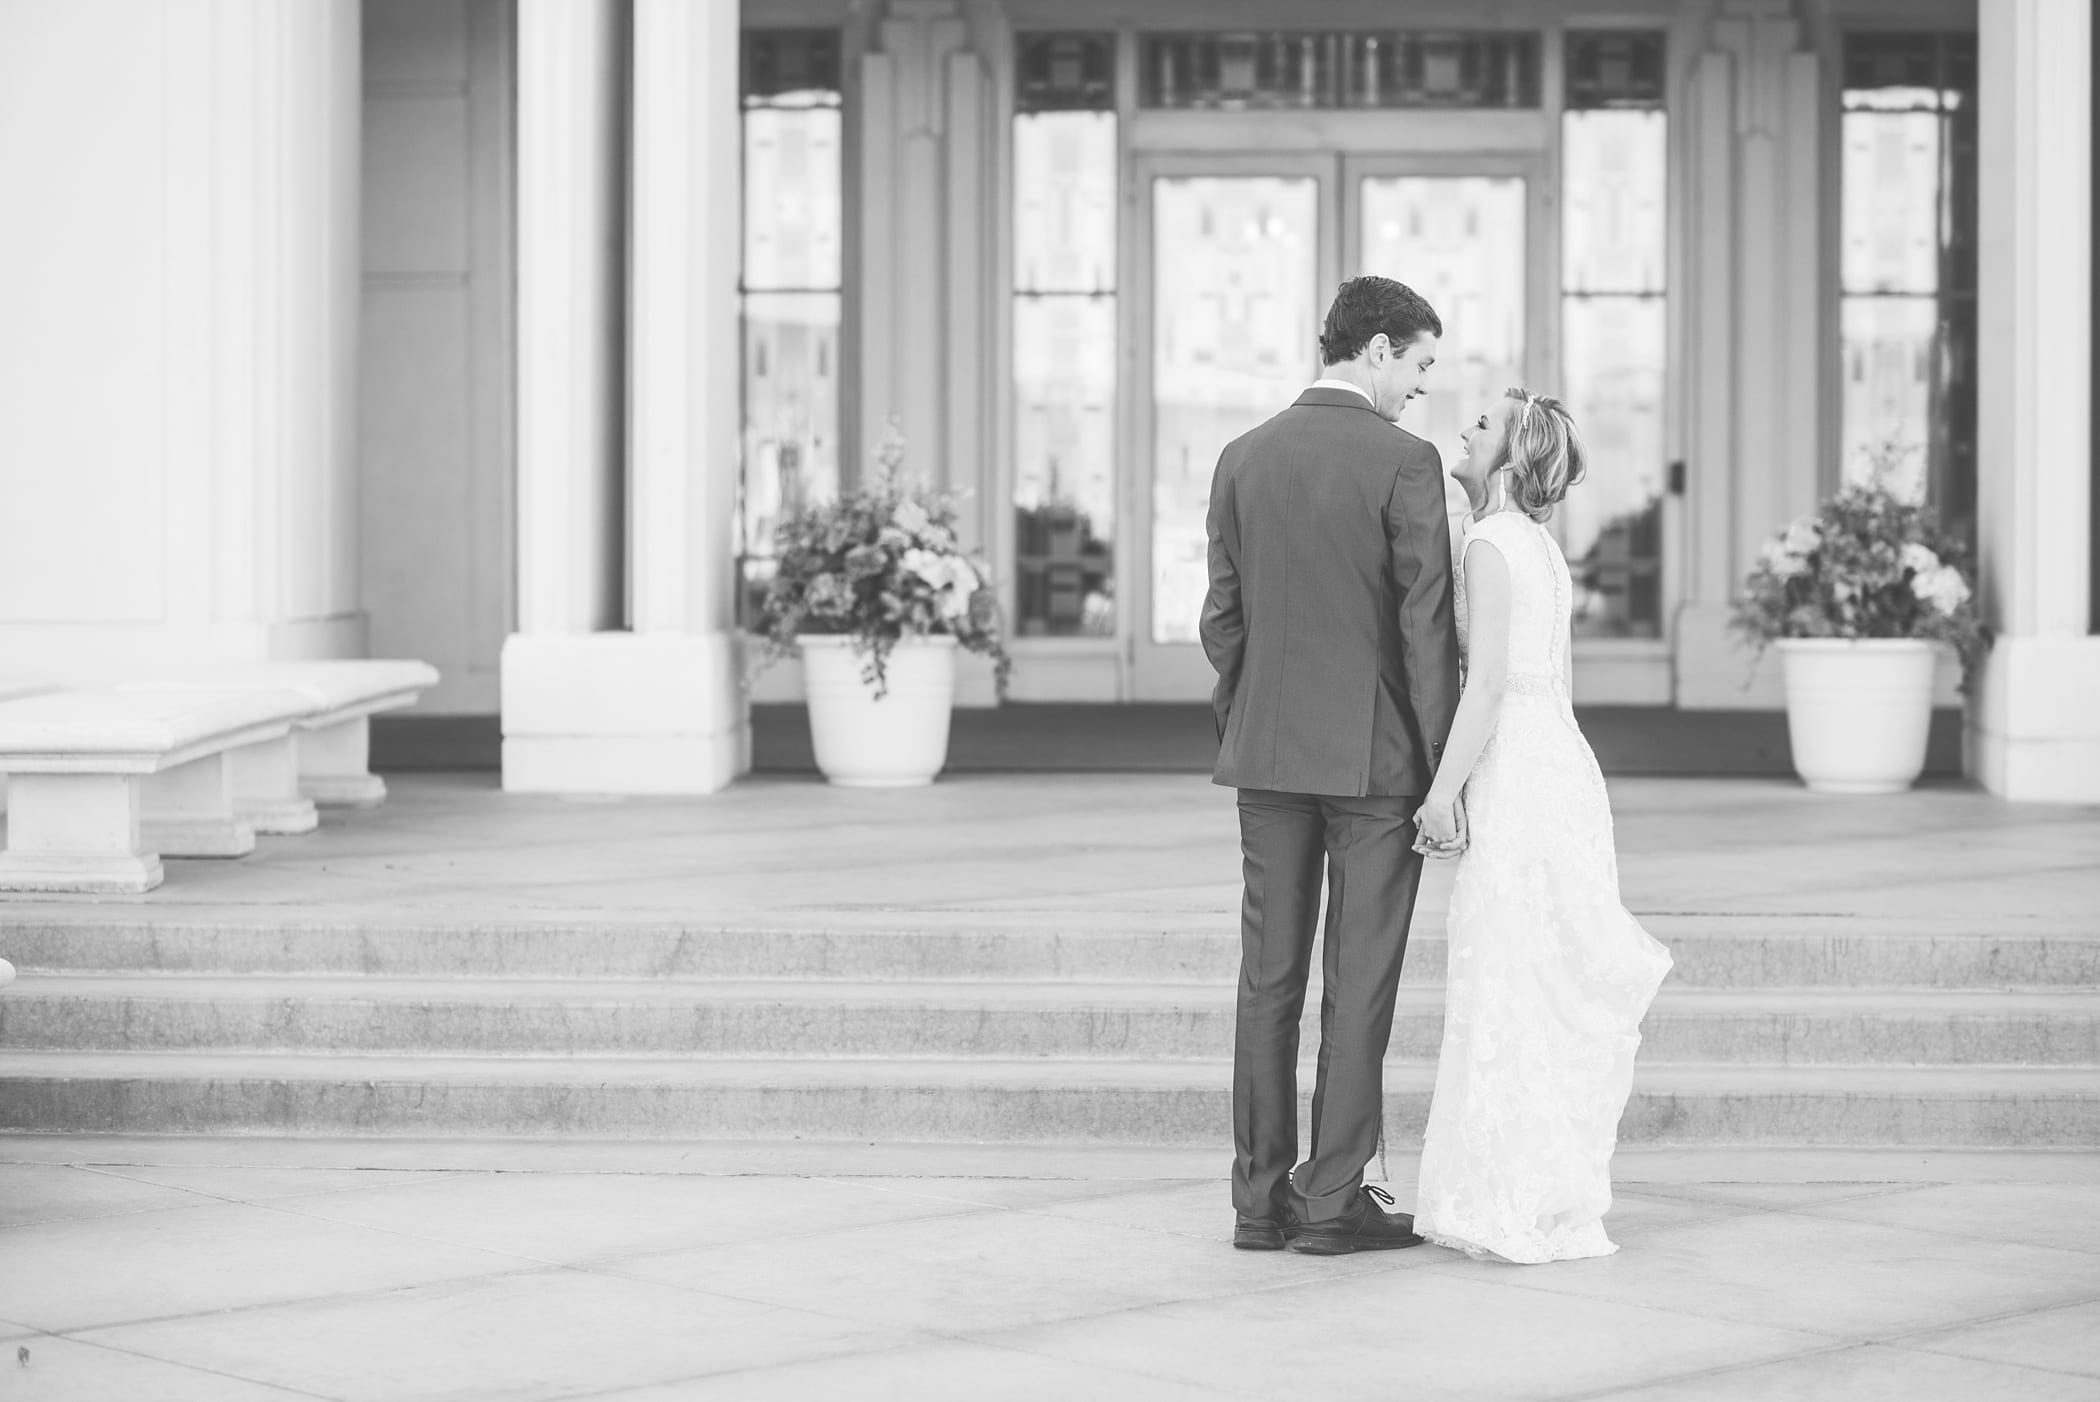 Rexburg LDS temple bridals by Michelle & Logan_0010